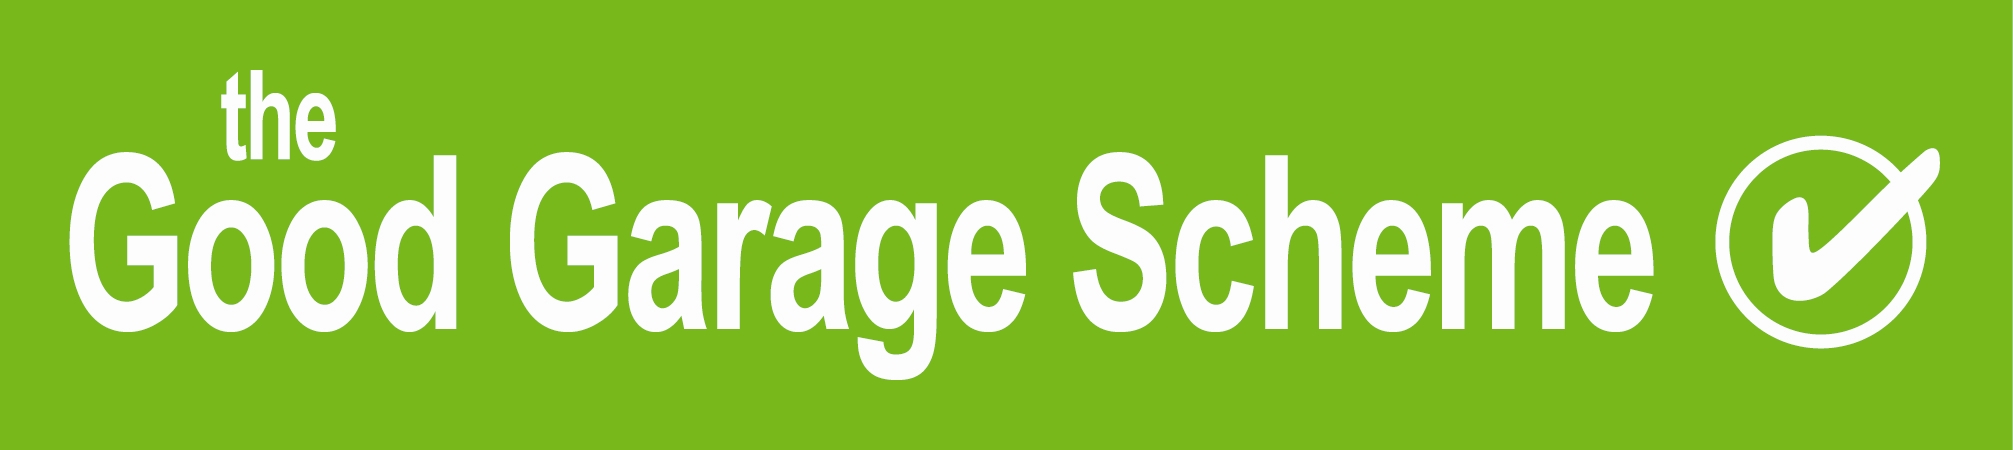 Good Garage Scheme Logo